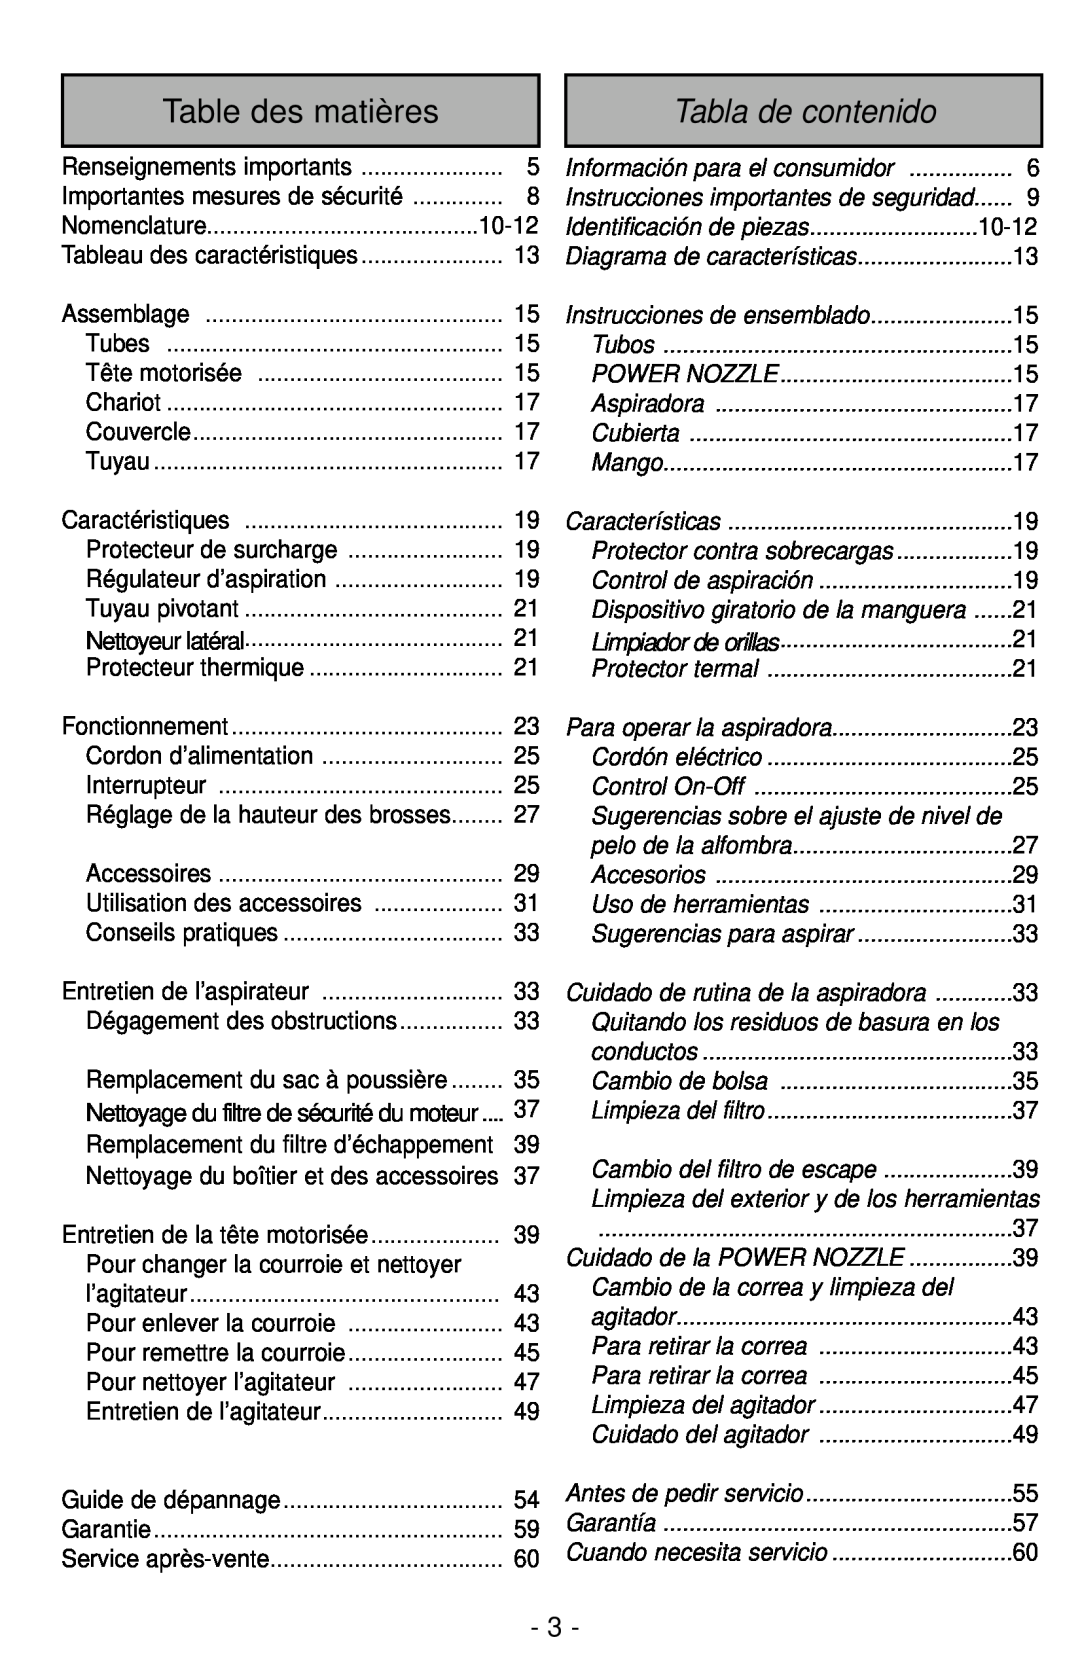 Panasonic MC-CG901 operating instructions Table des matières, Tabla de contenido 